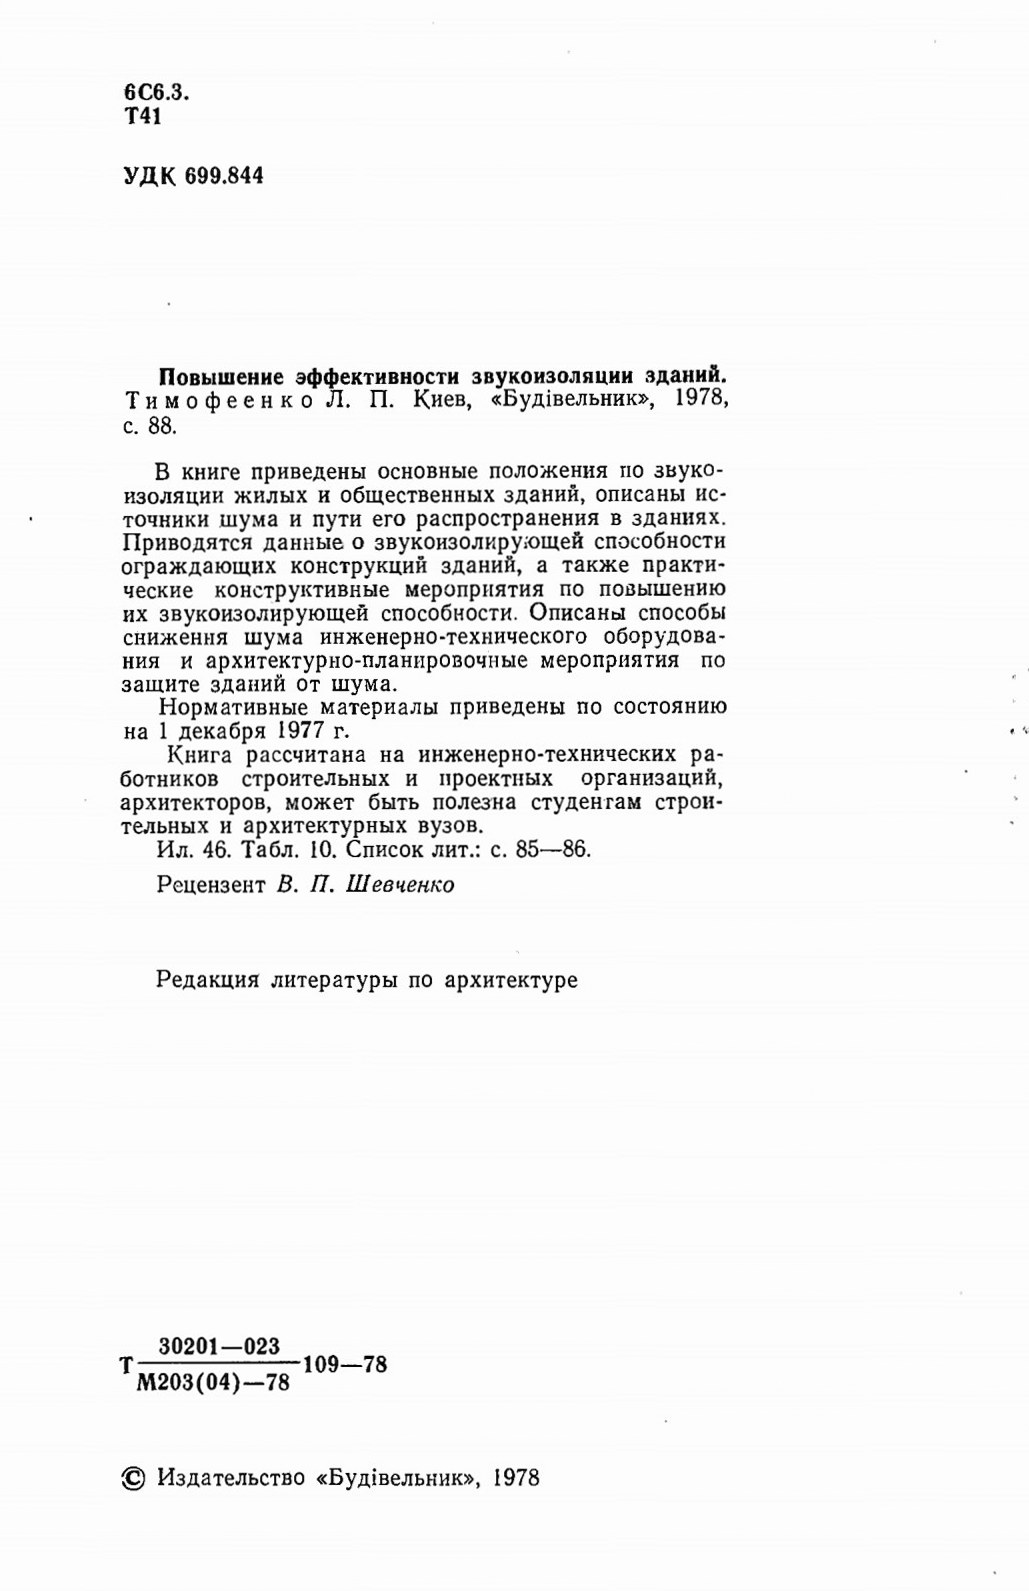 Повышение эффективности звукоизоляции зданий / Л. П. Тимофеенко. — Киев : «Будівельник», 1978